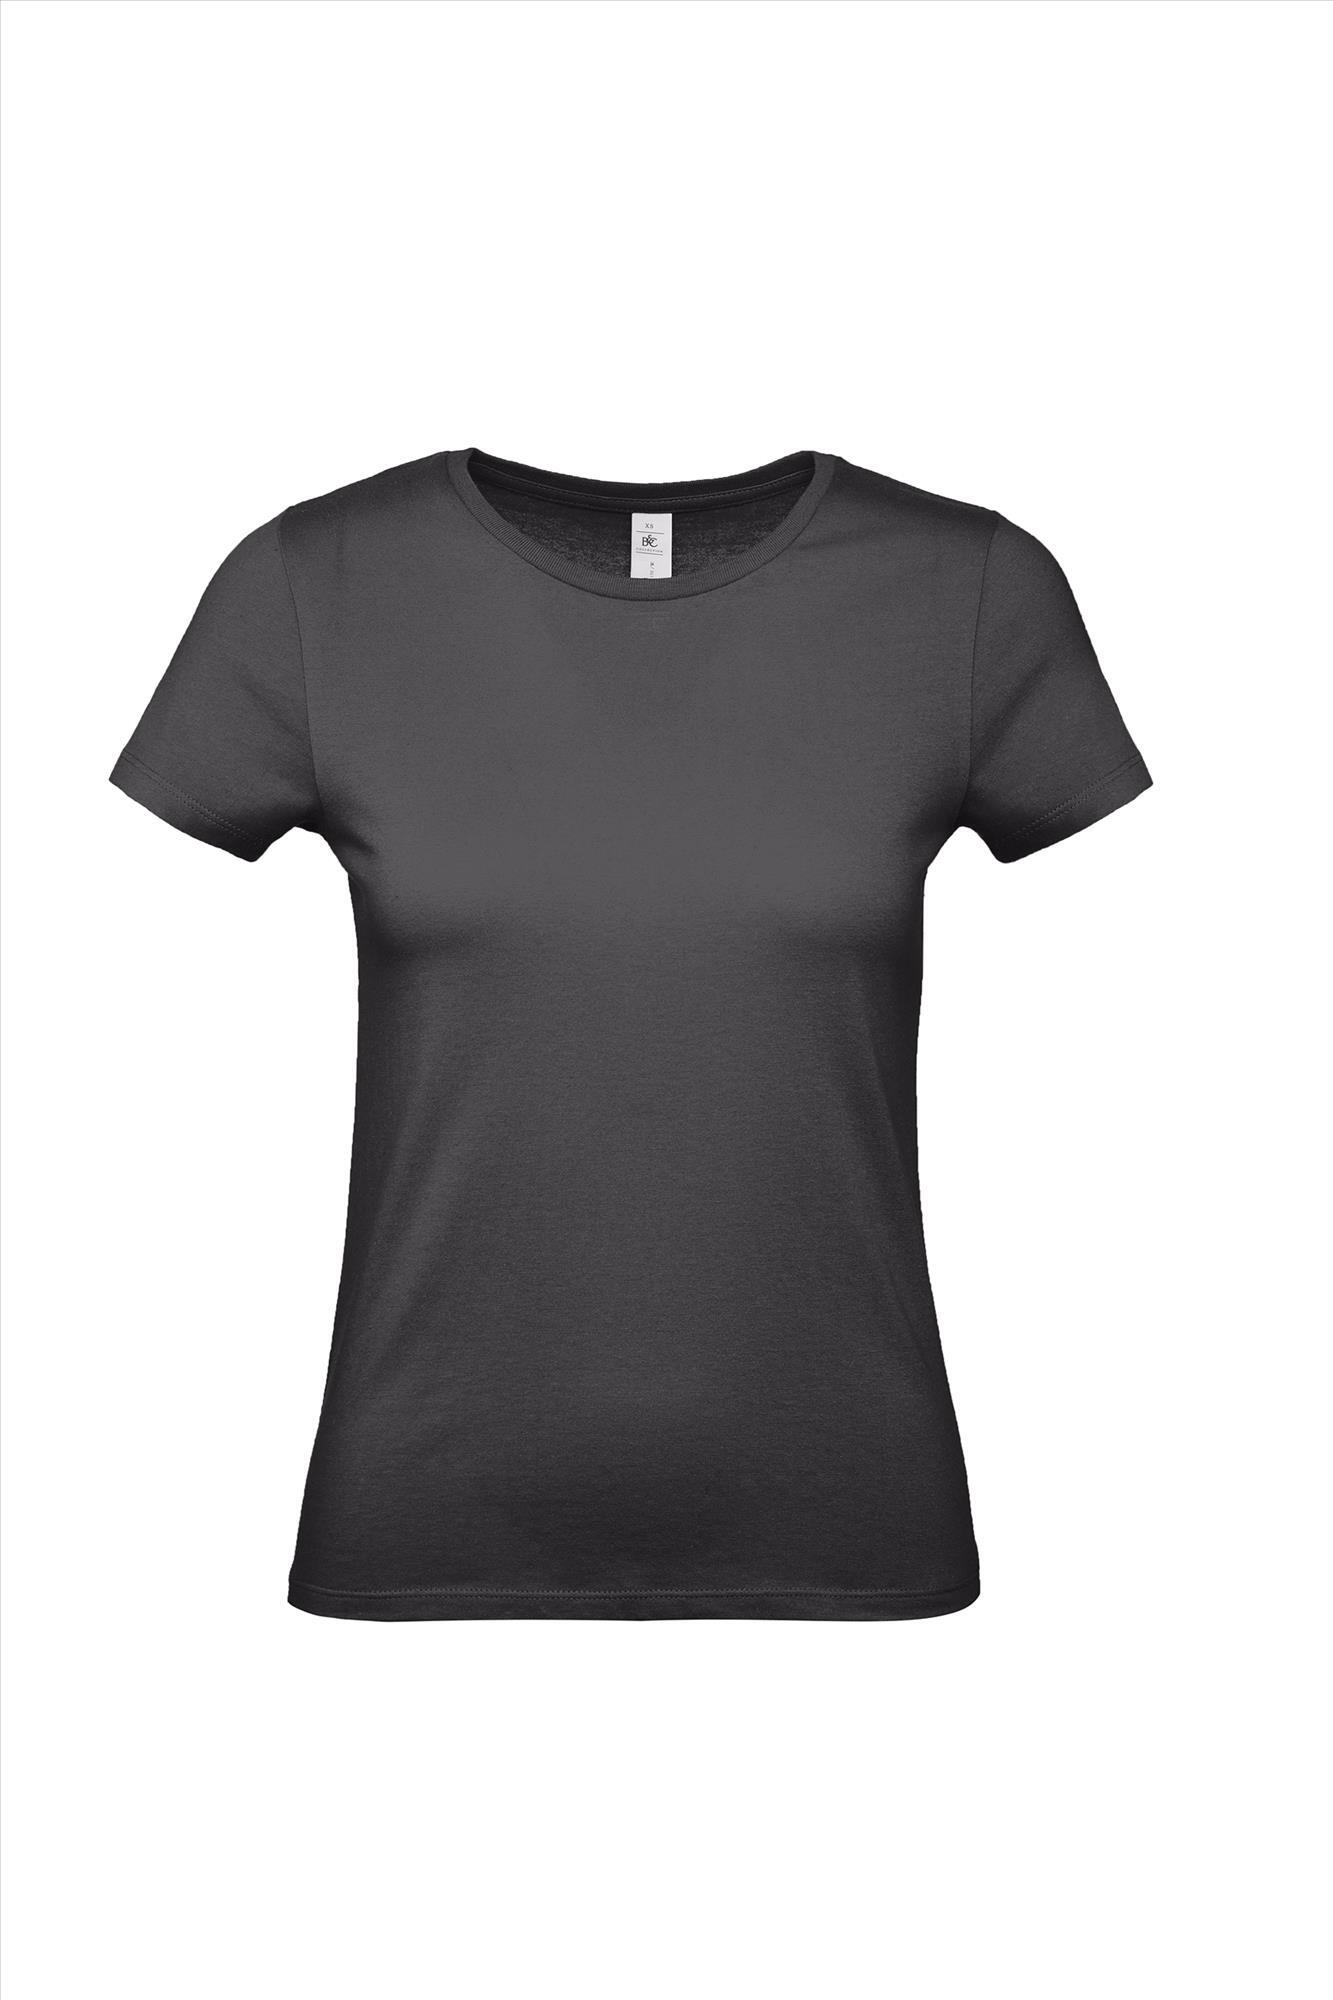 Modern T-shirt voor haar dames shirt urban black